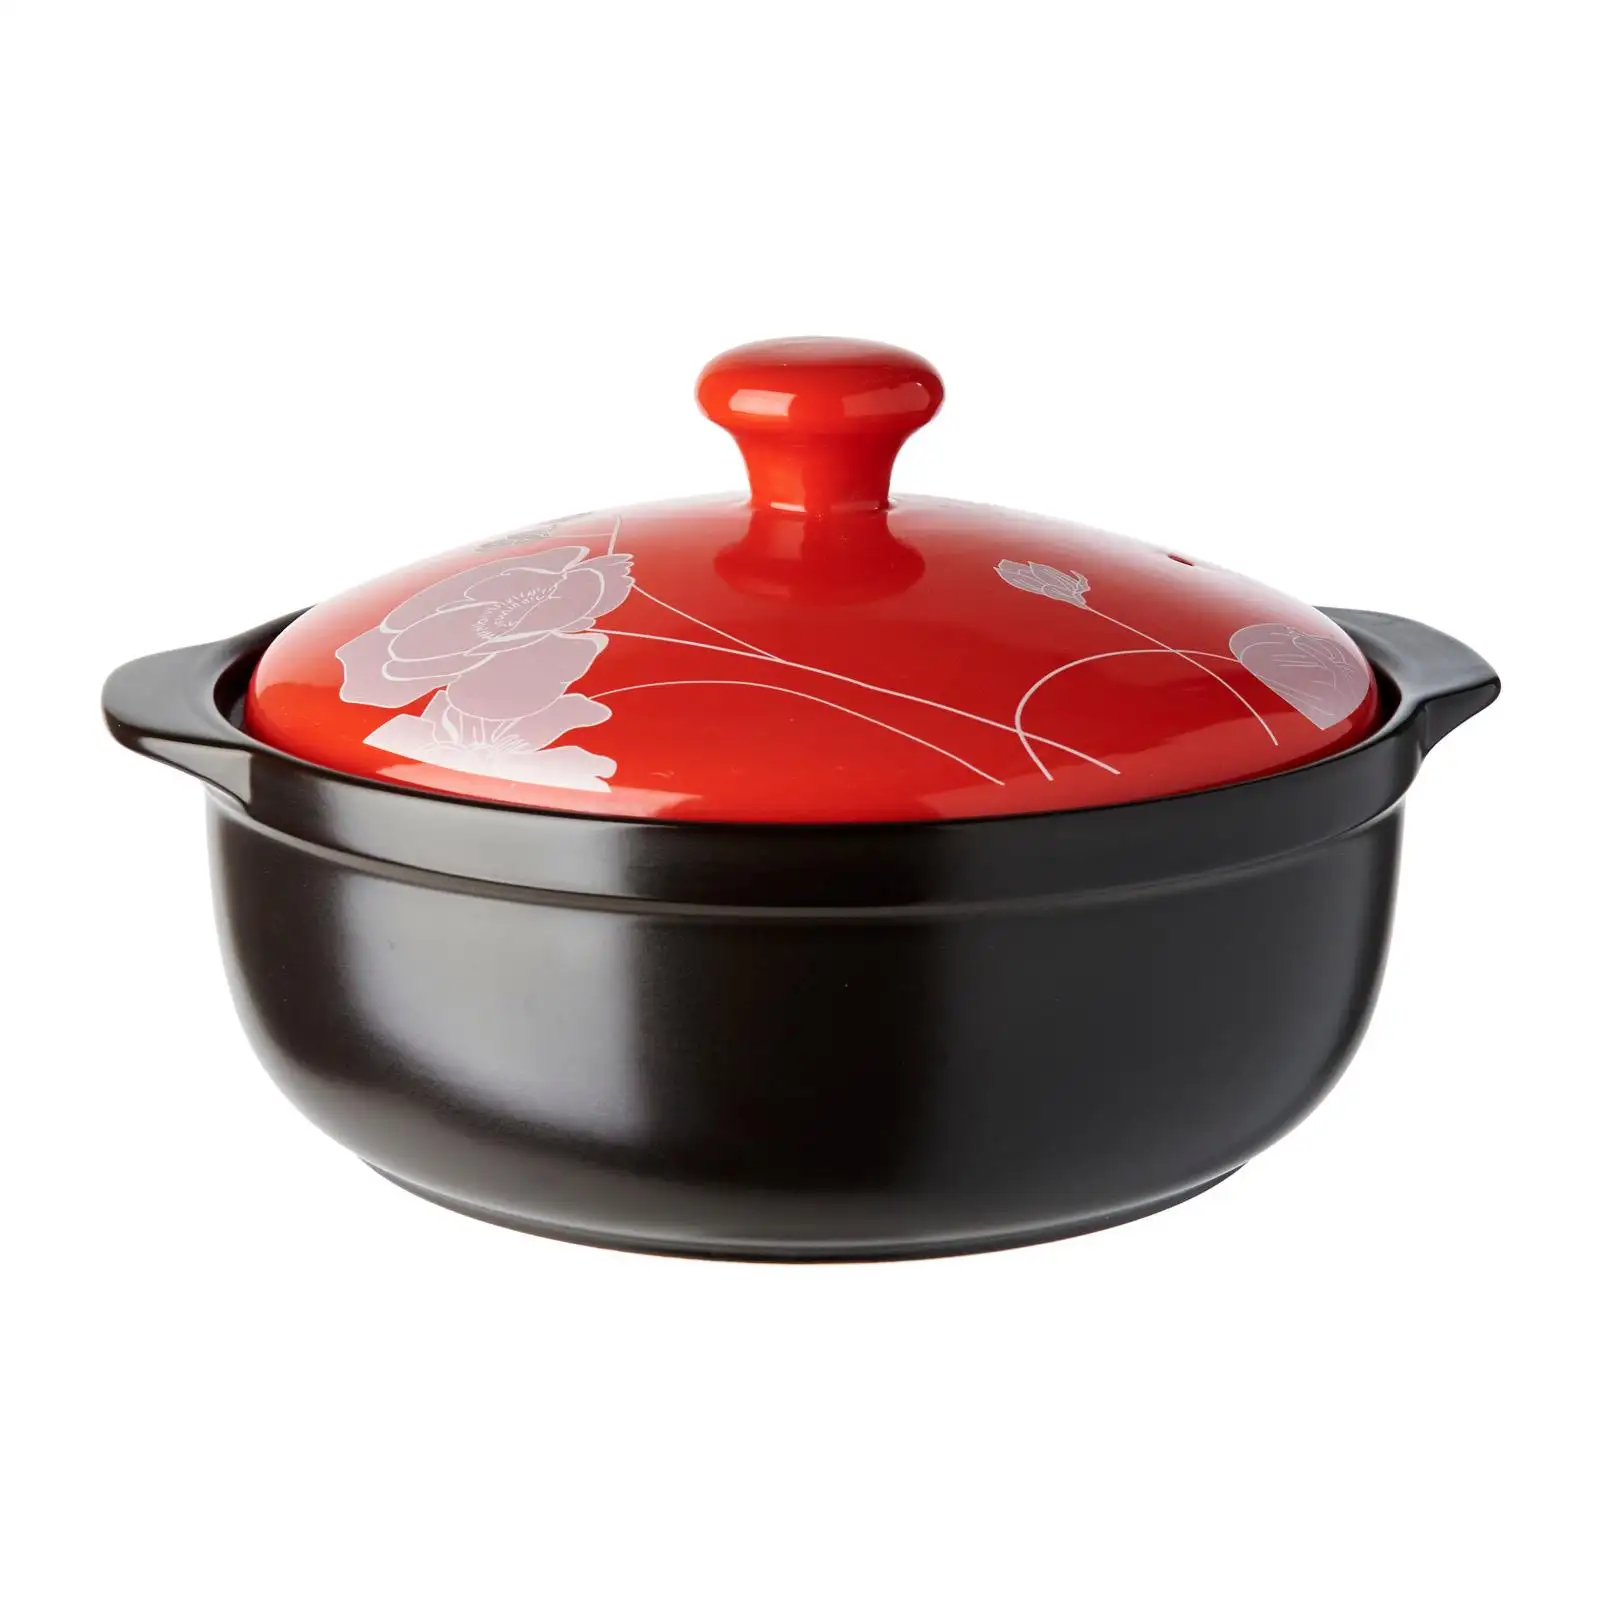 MOQ Rendah 2,5 L Warna Merah/Hitam Cera Vita Perak Peony Casserole Pot Keramik untuk Memasak dengan Tutup Ukuran D25 X H9 CM